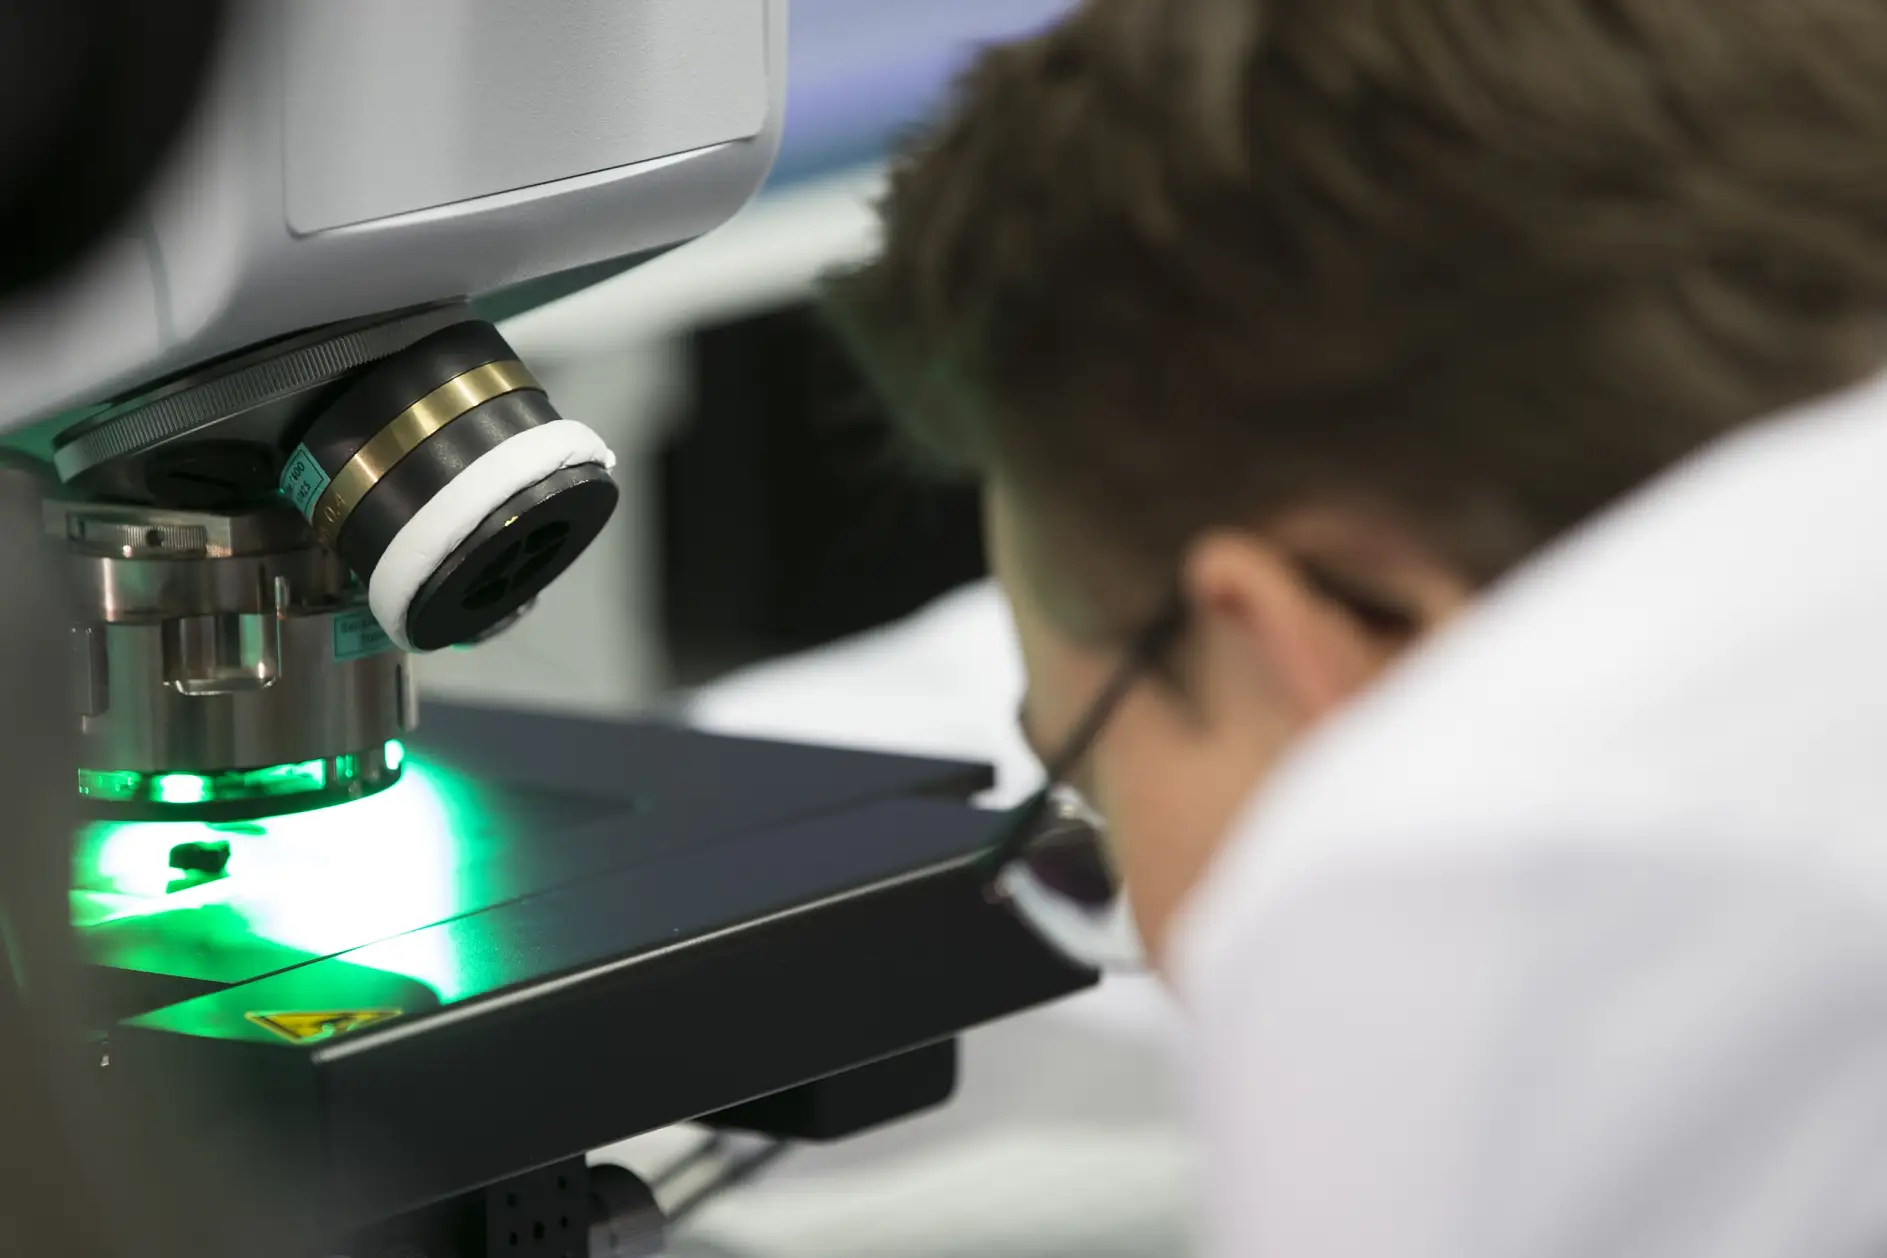 Badanie pod mikroskopem na podczerwień pozwala dostrzec najmniejsze cząsteczki materiału.